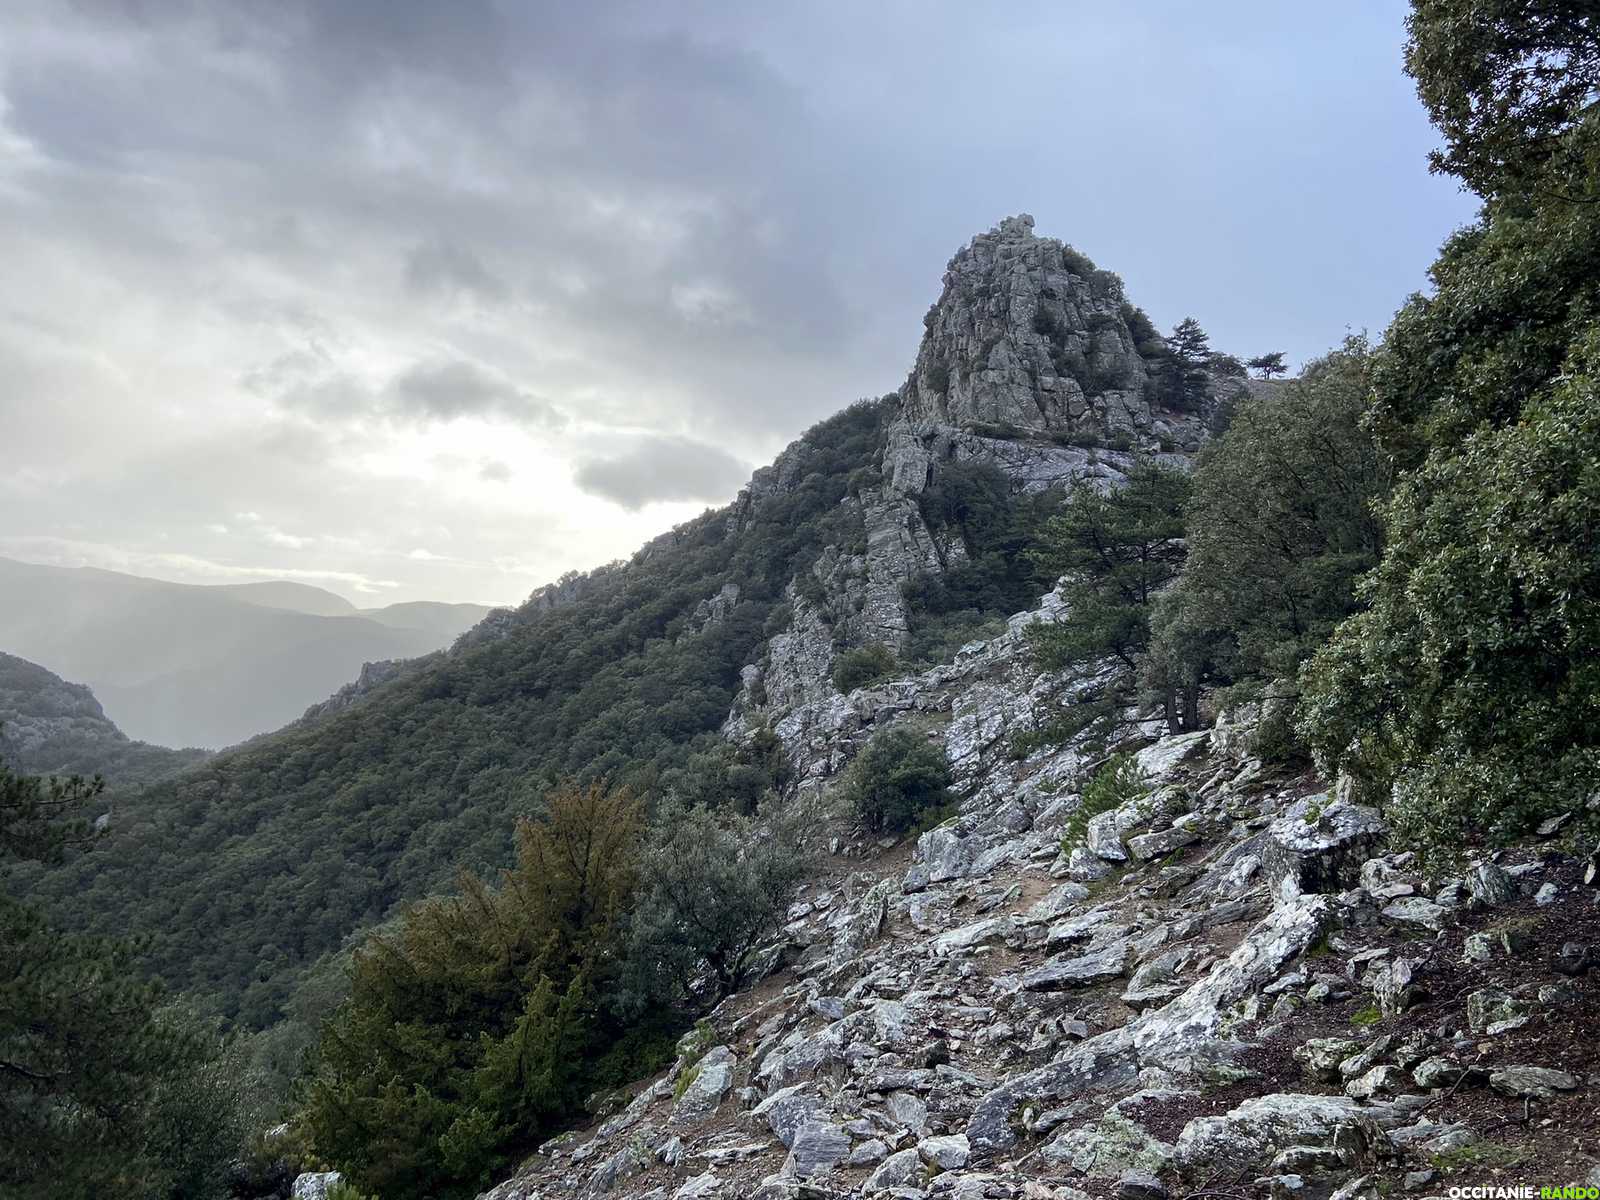 Occitanie rando trekking herault piste gleyzo caroux maure mons grp 42